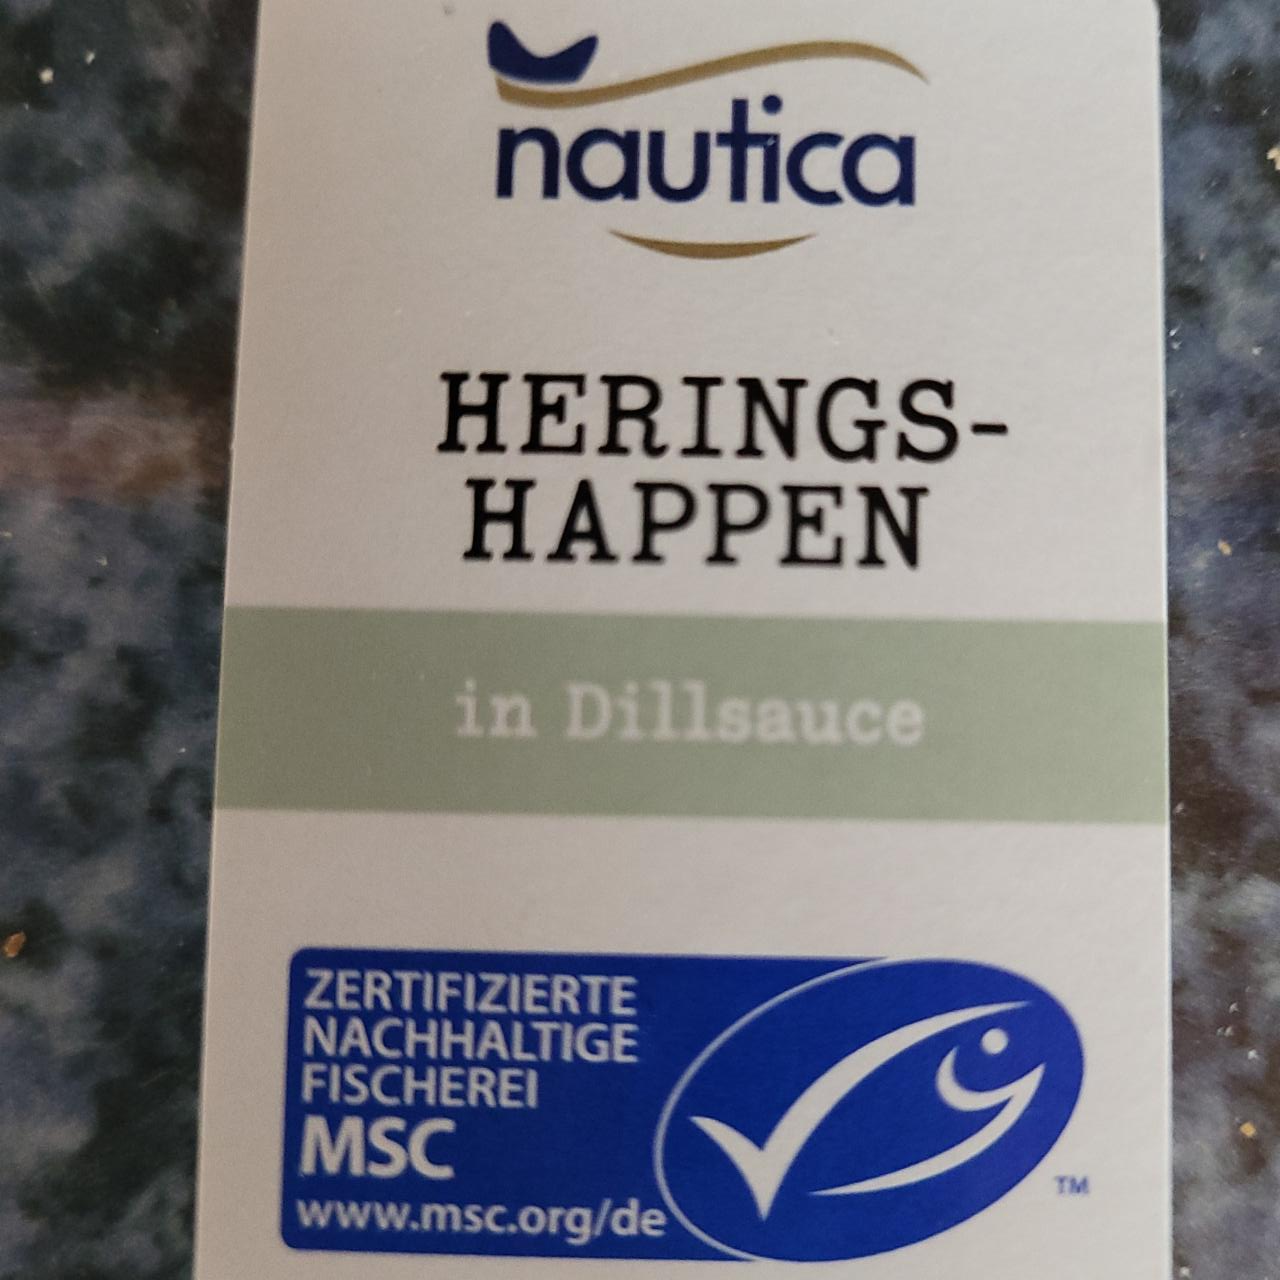 Fotografie - Herings-happen in Dillsauce nautica